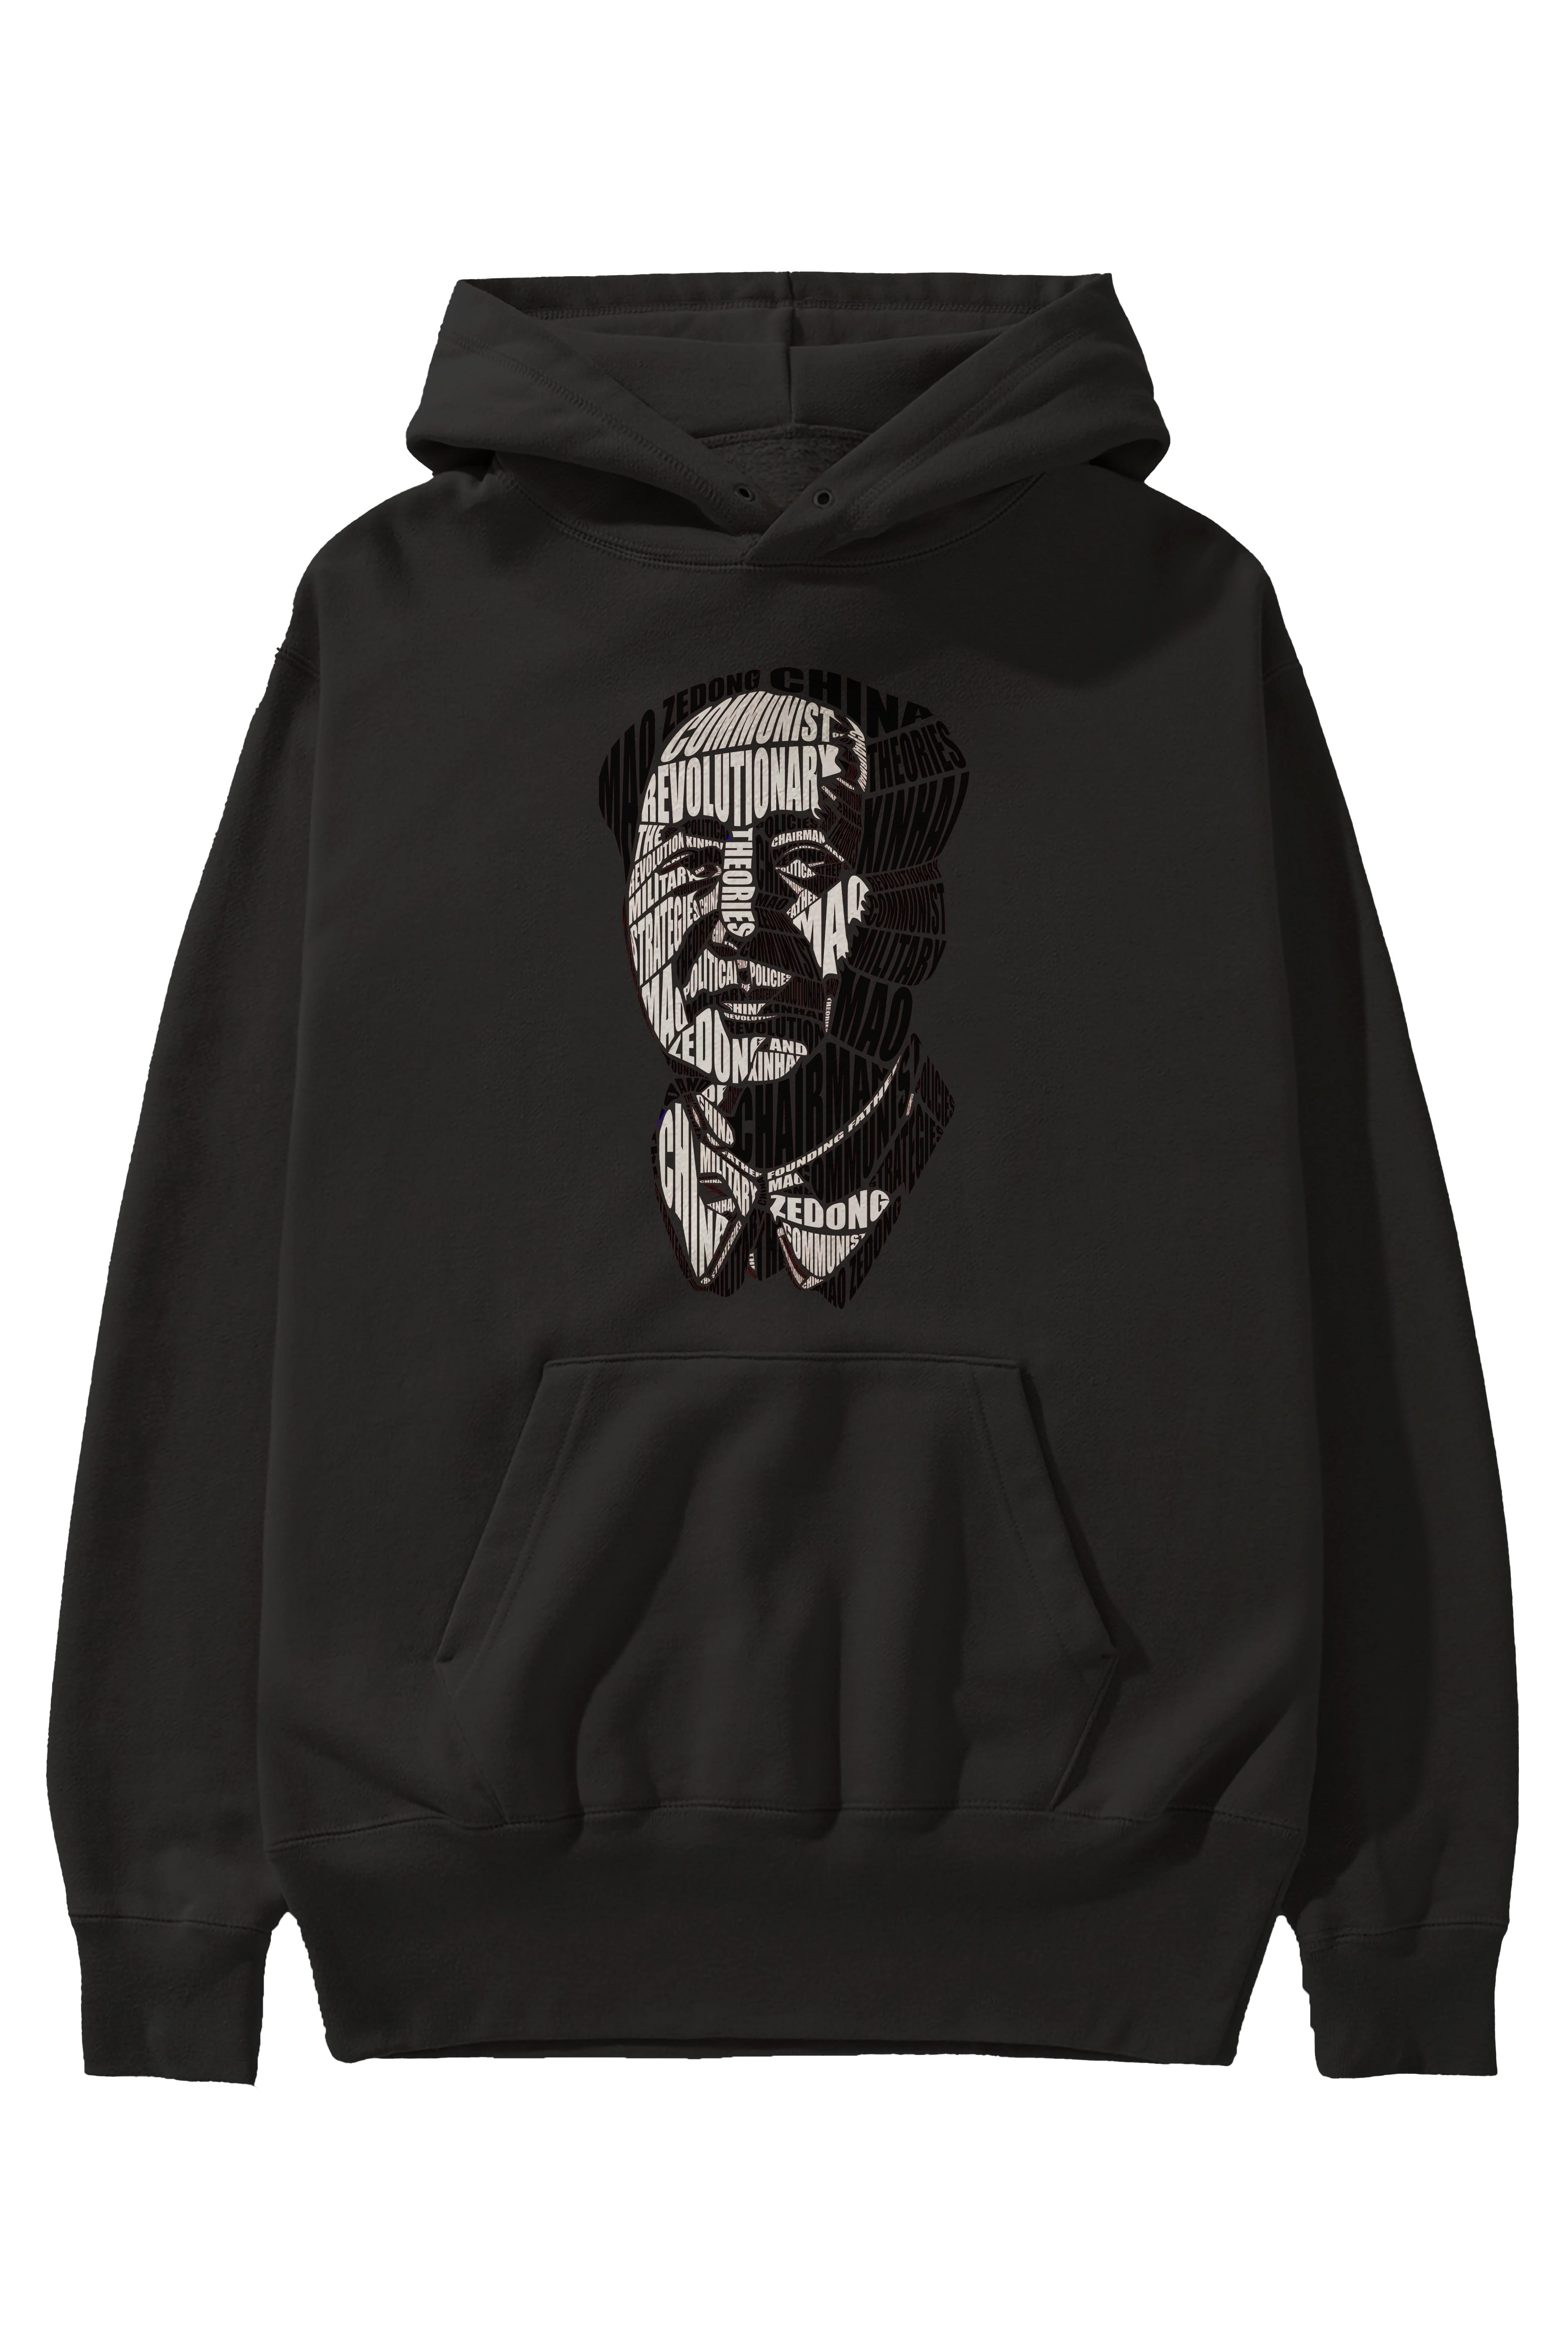 Mao Zedong Calligram Ön Baskılı Hoodie Oversize Kapüşonlu Sweatshirt Erkek Kadın Unisex